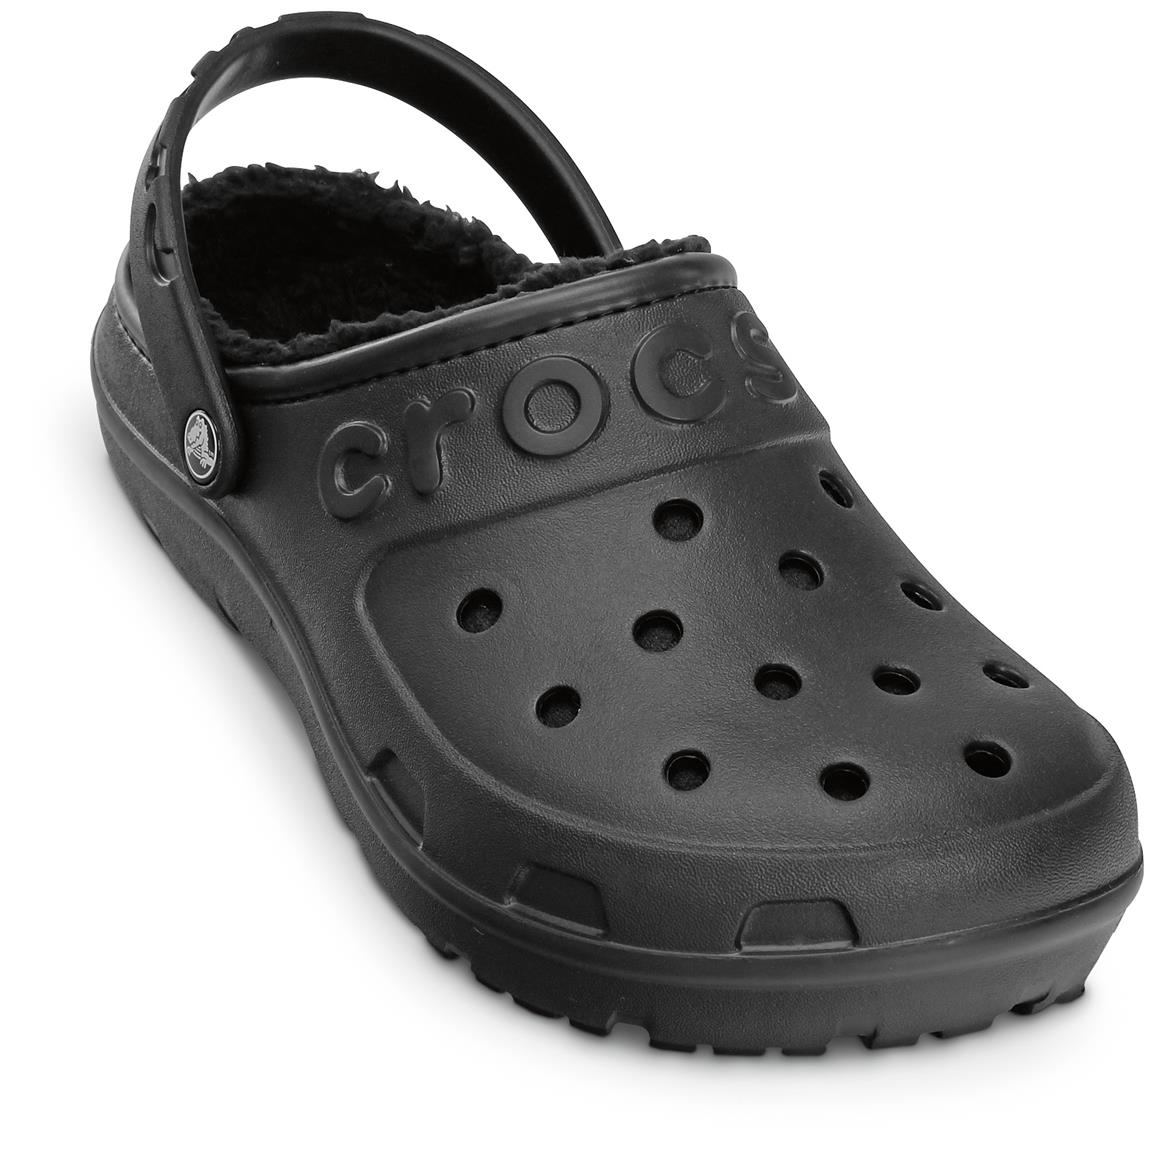  Crocs  Men s  Hilo Lined Clogs 643770 Casual Shoes at 